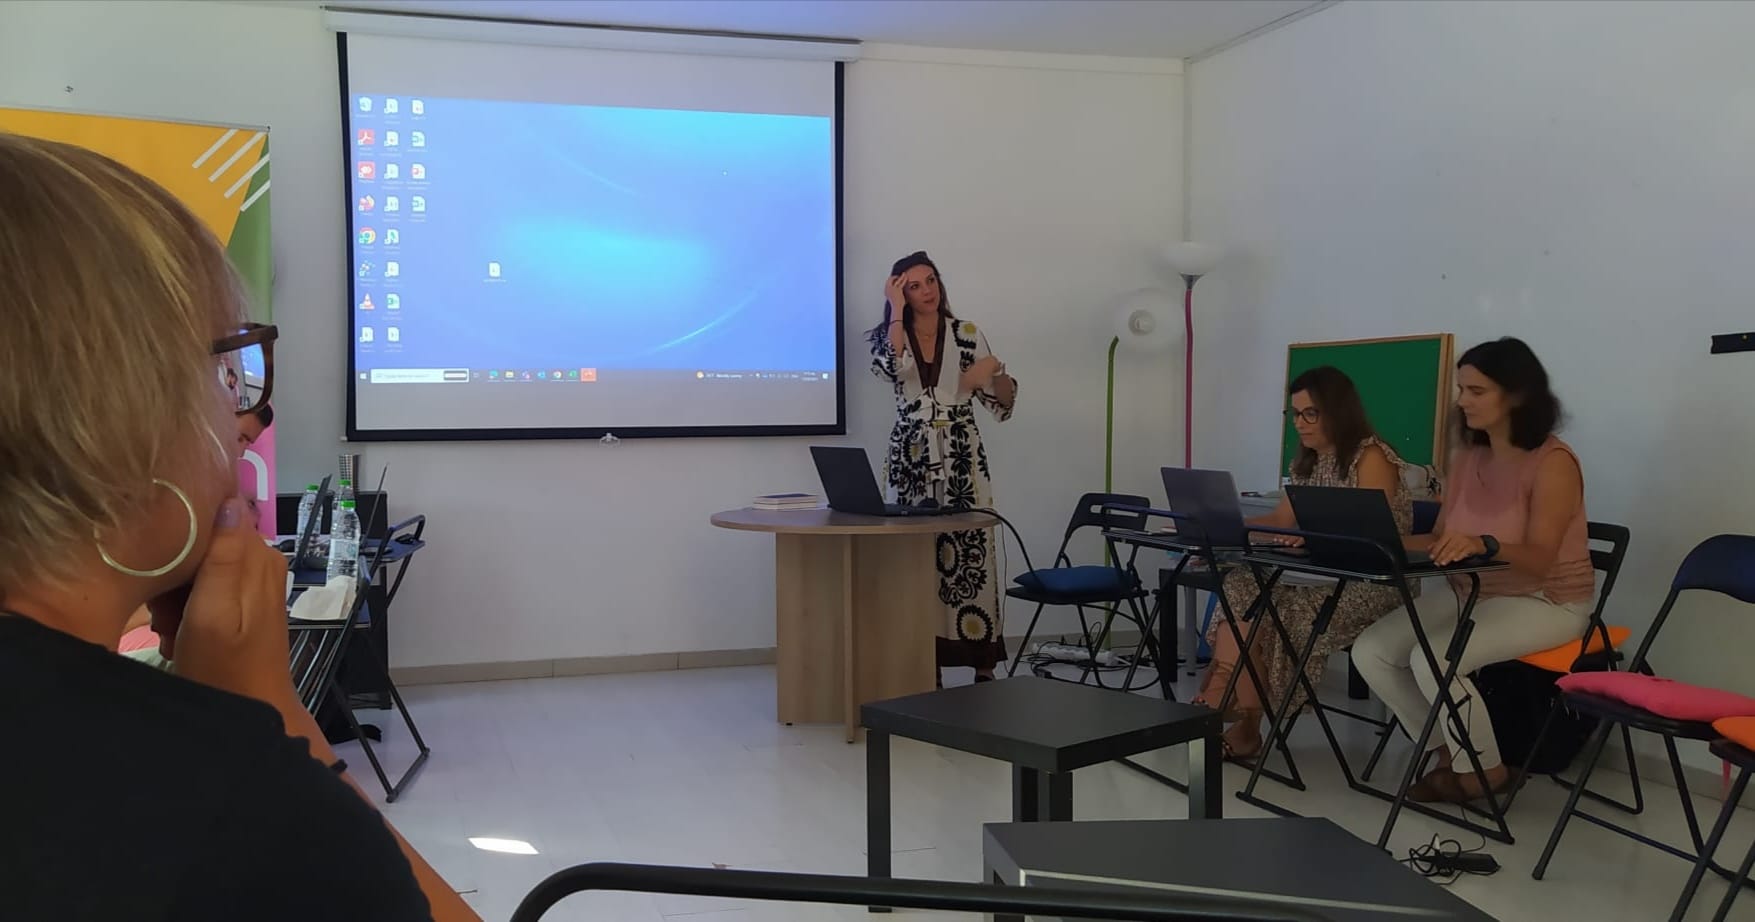 El Centre de formació d'adults participa en un projecte europeu d'alfabetització a Atenes